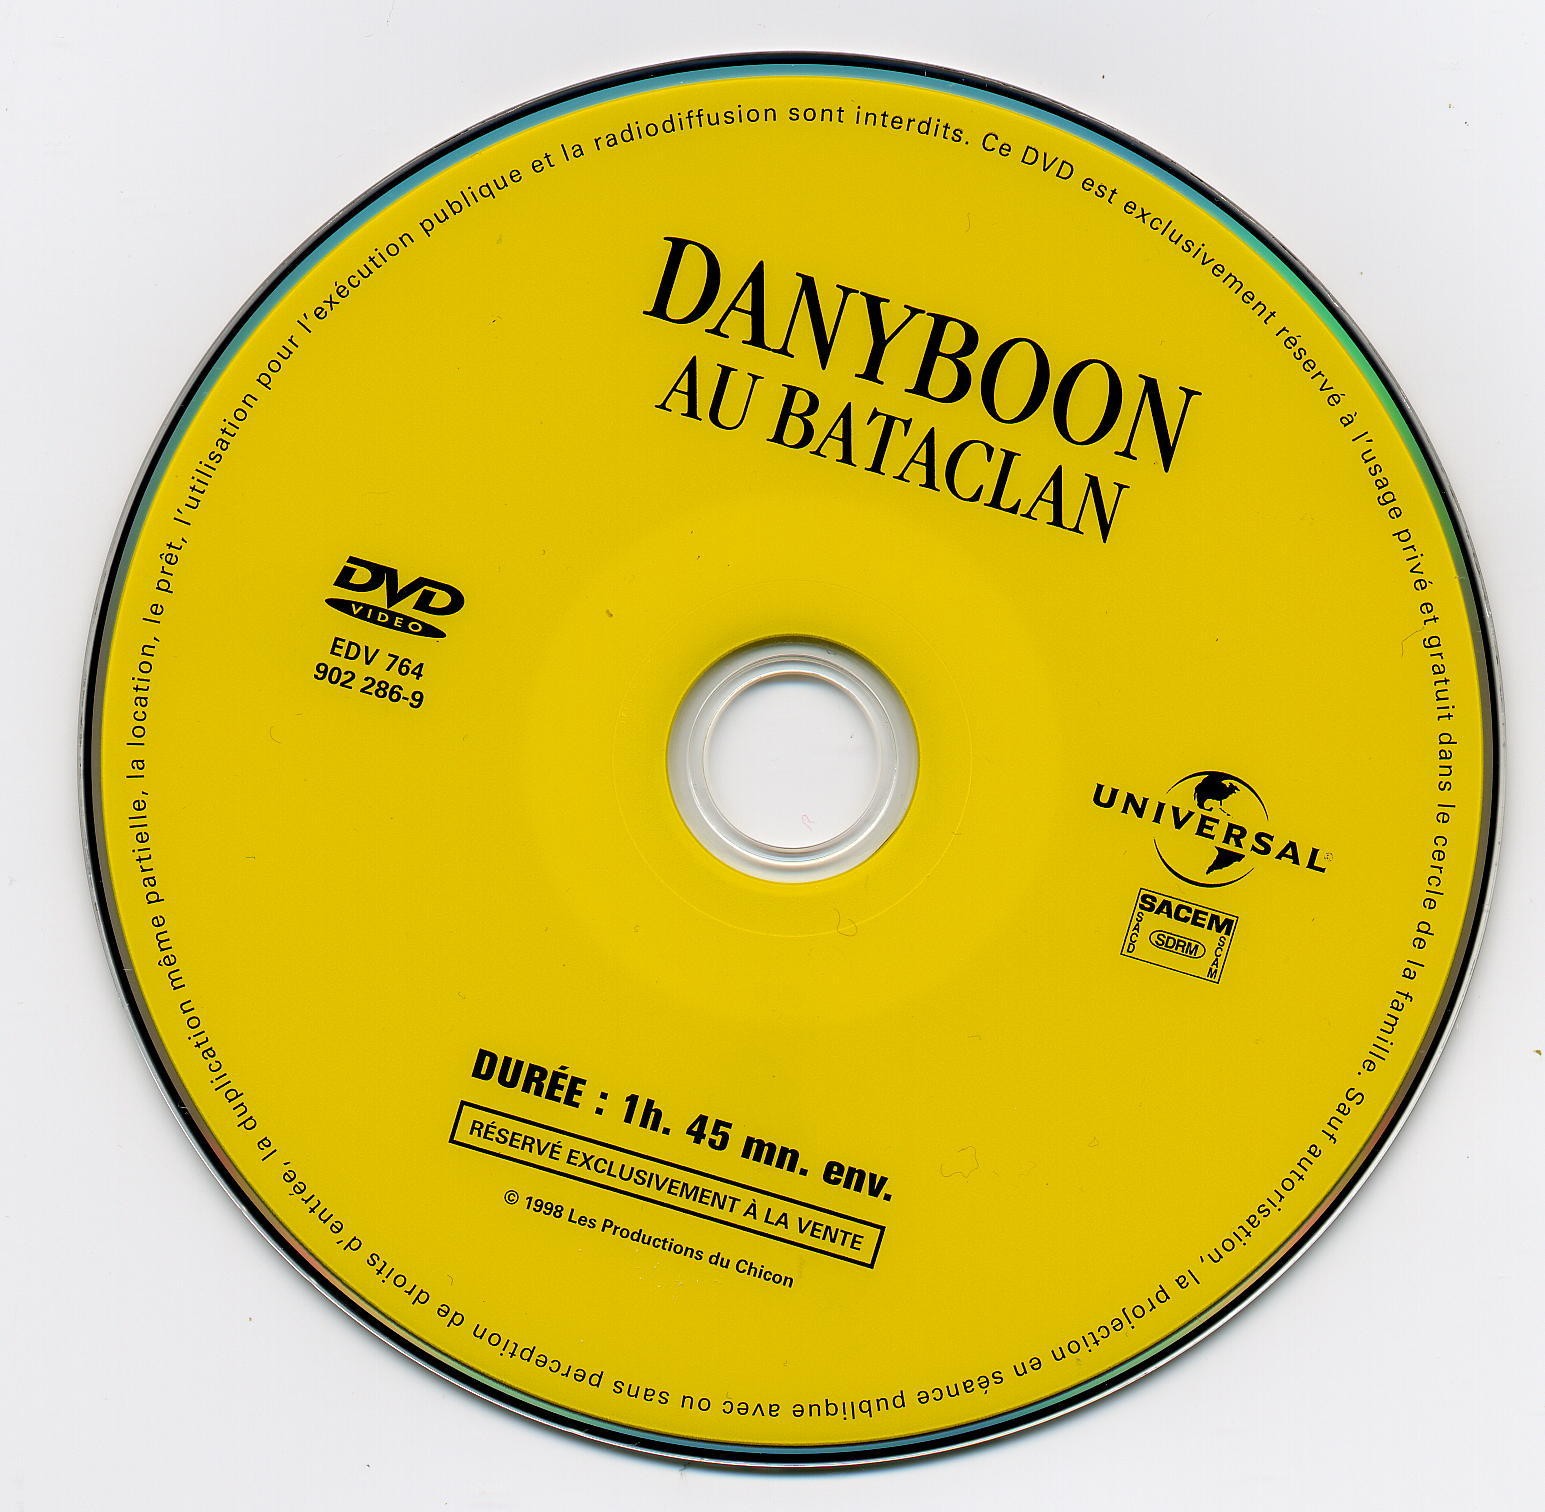 Dany Boon au bataclan